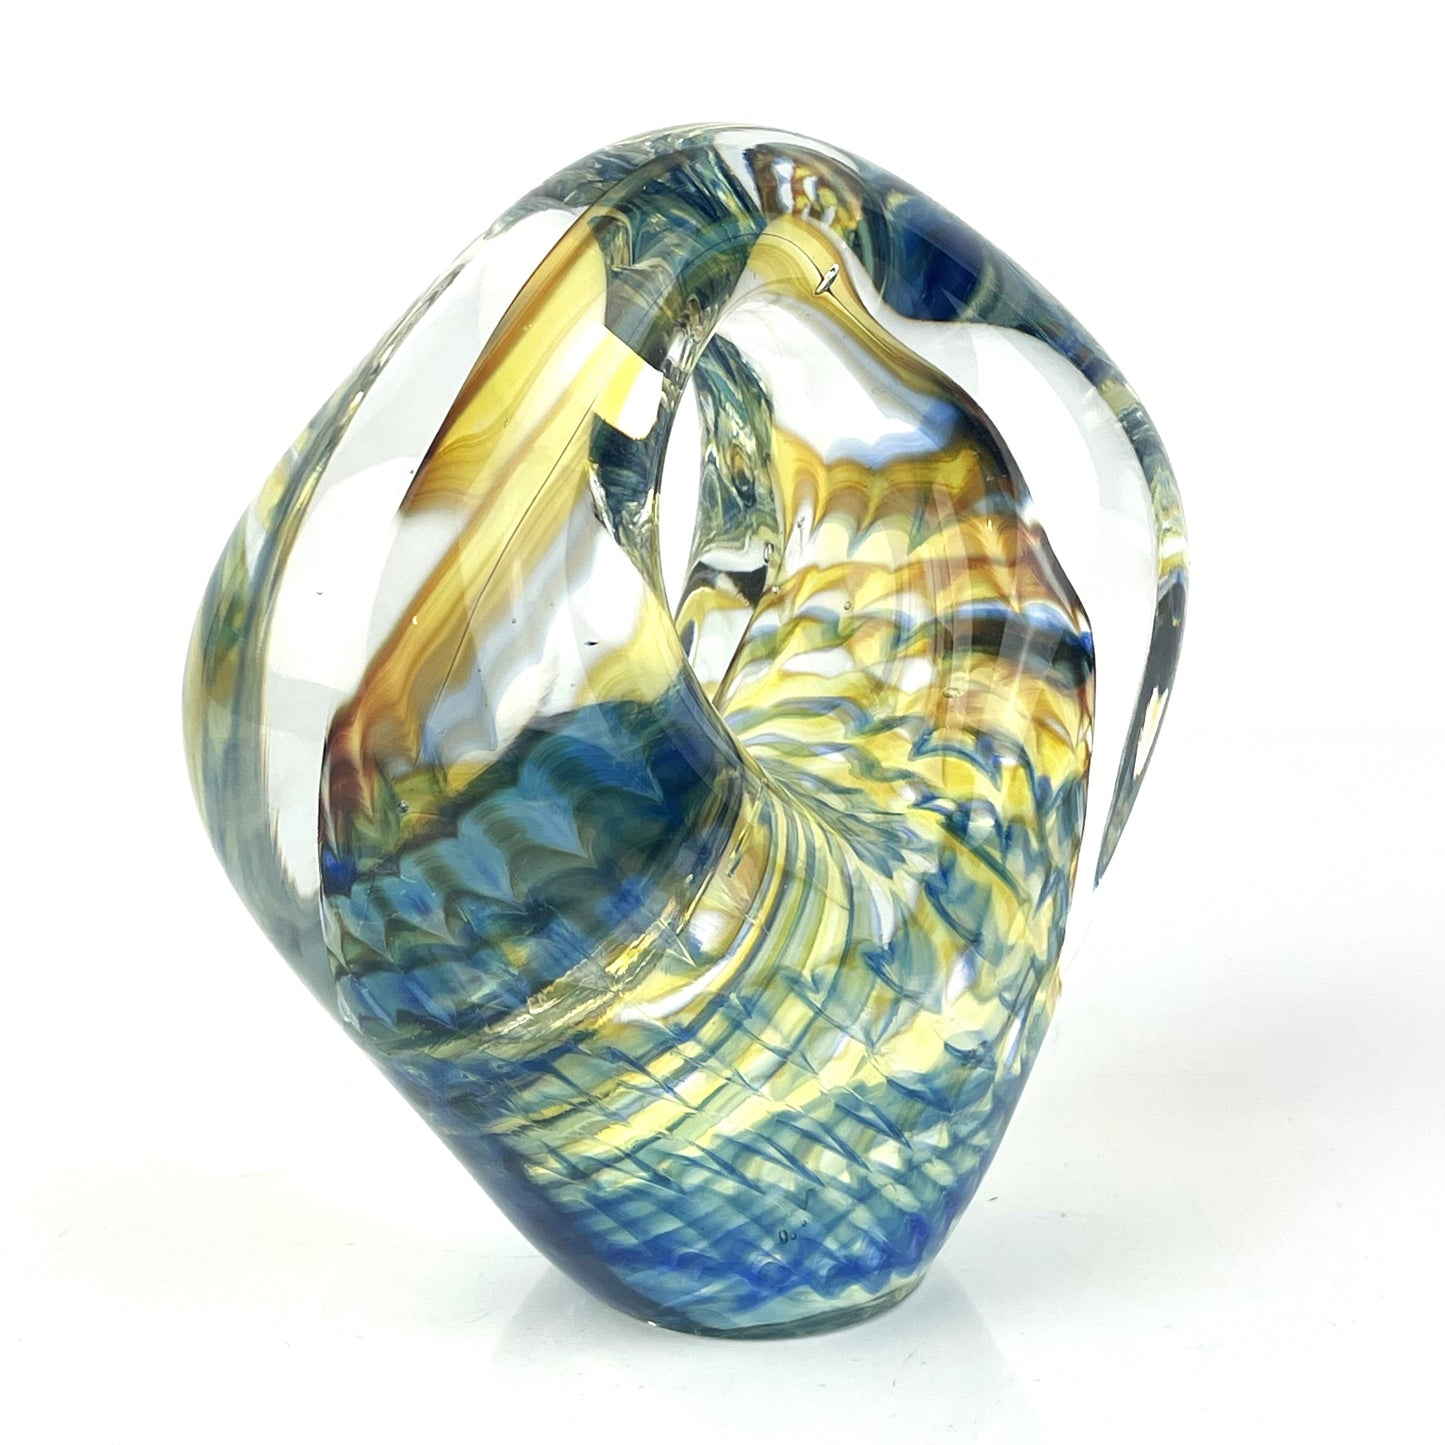 Chris Belleau Uniquely Shaped Art Glass Sculpture Paperweight